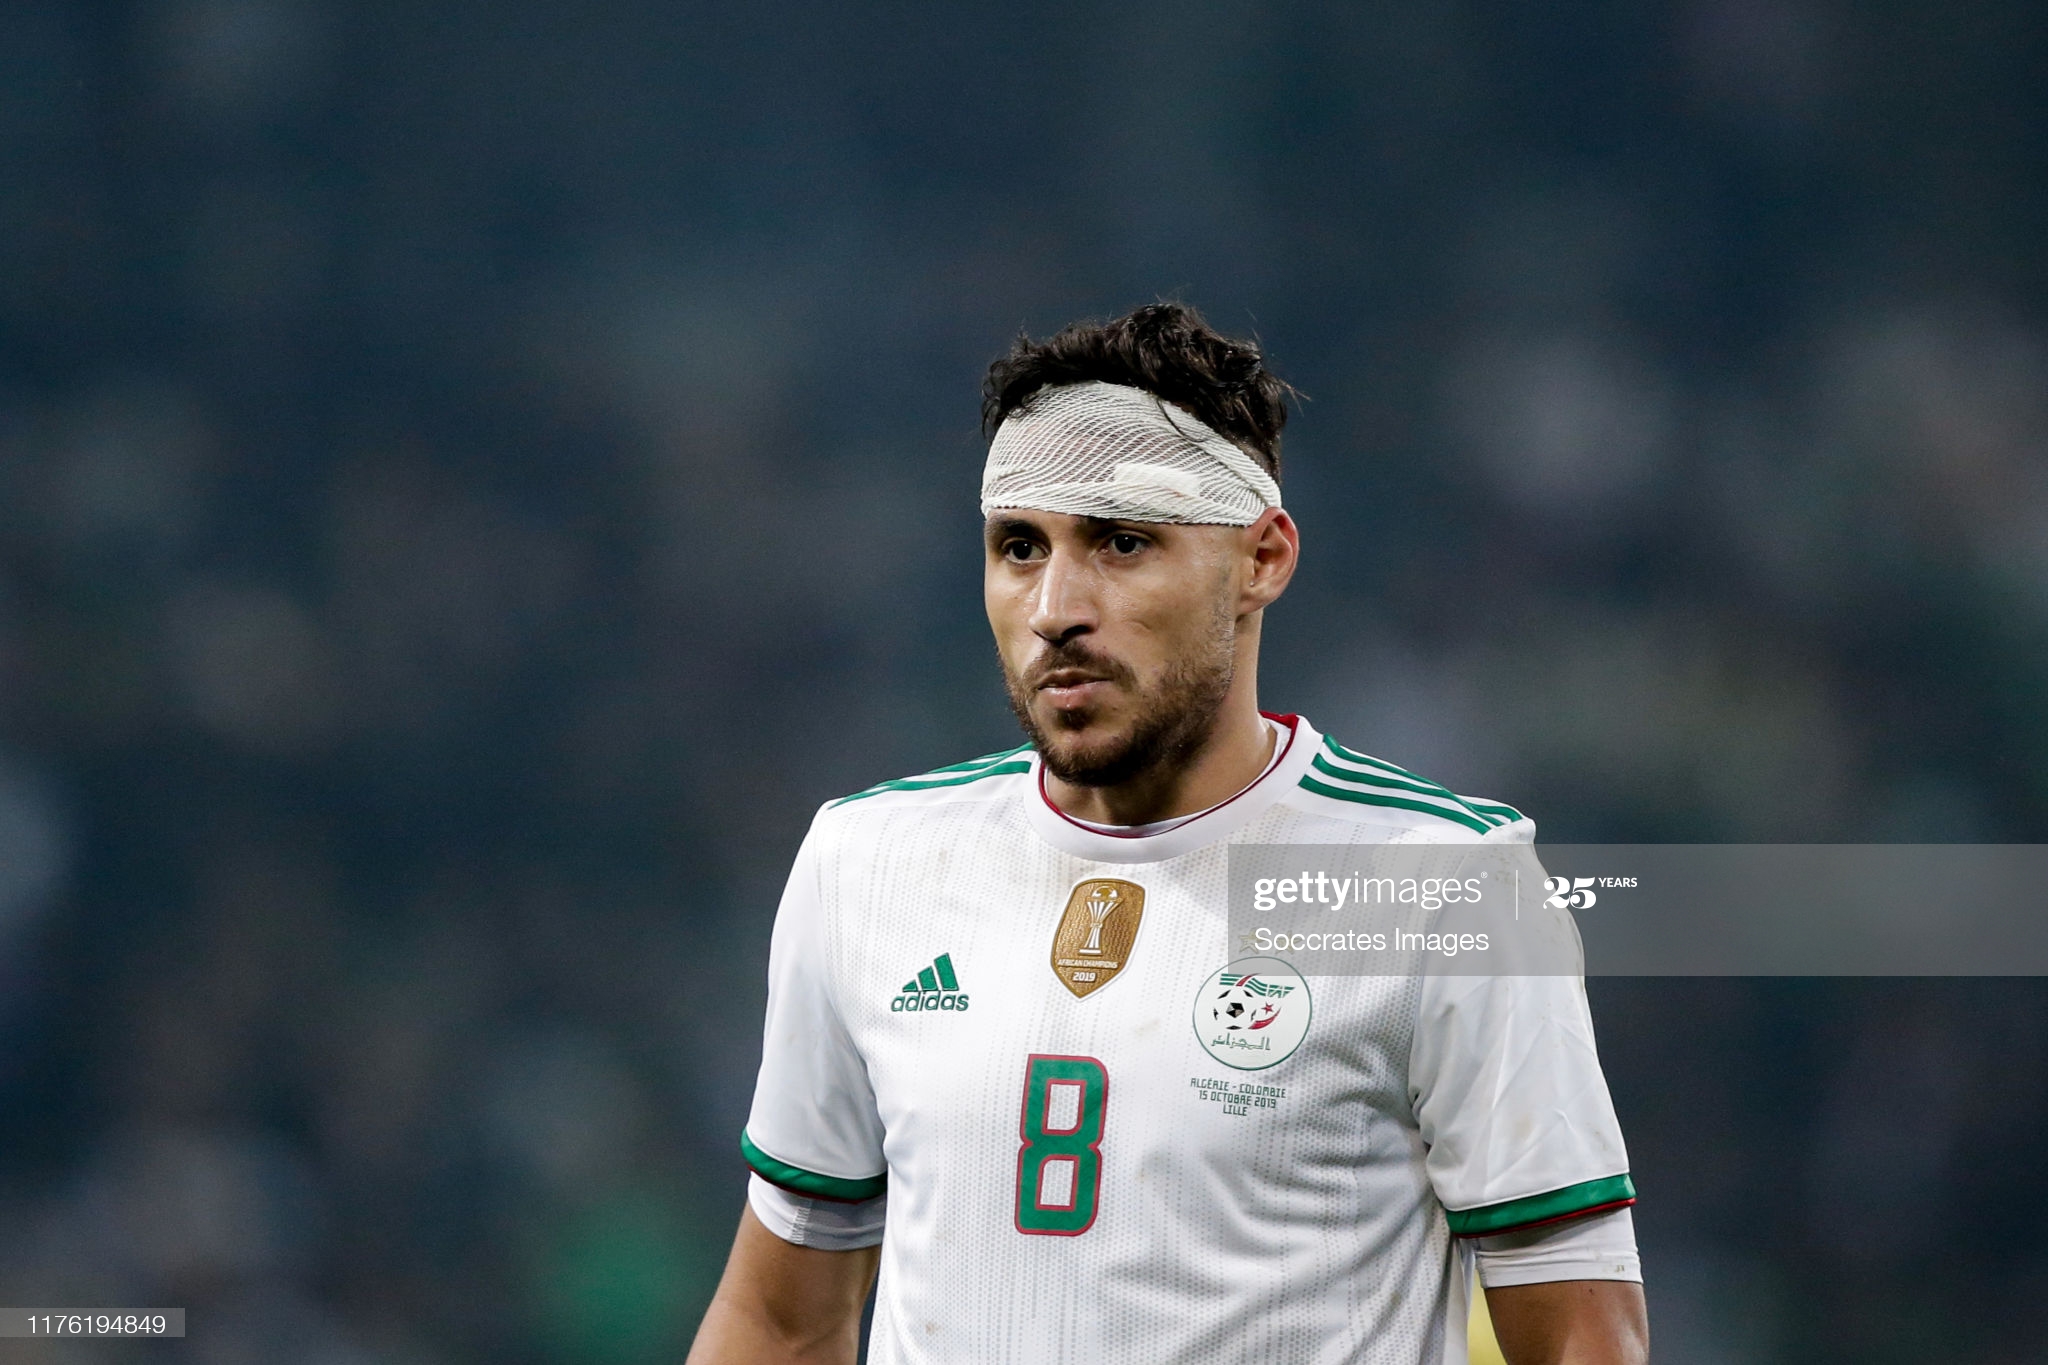 Al Ahli rabaisse le prix de Belaïli pour faciliter son transfert